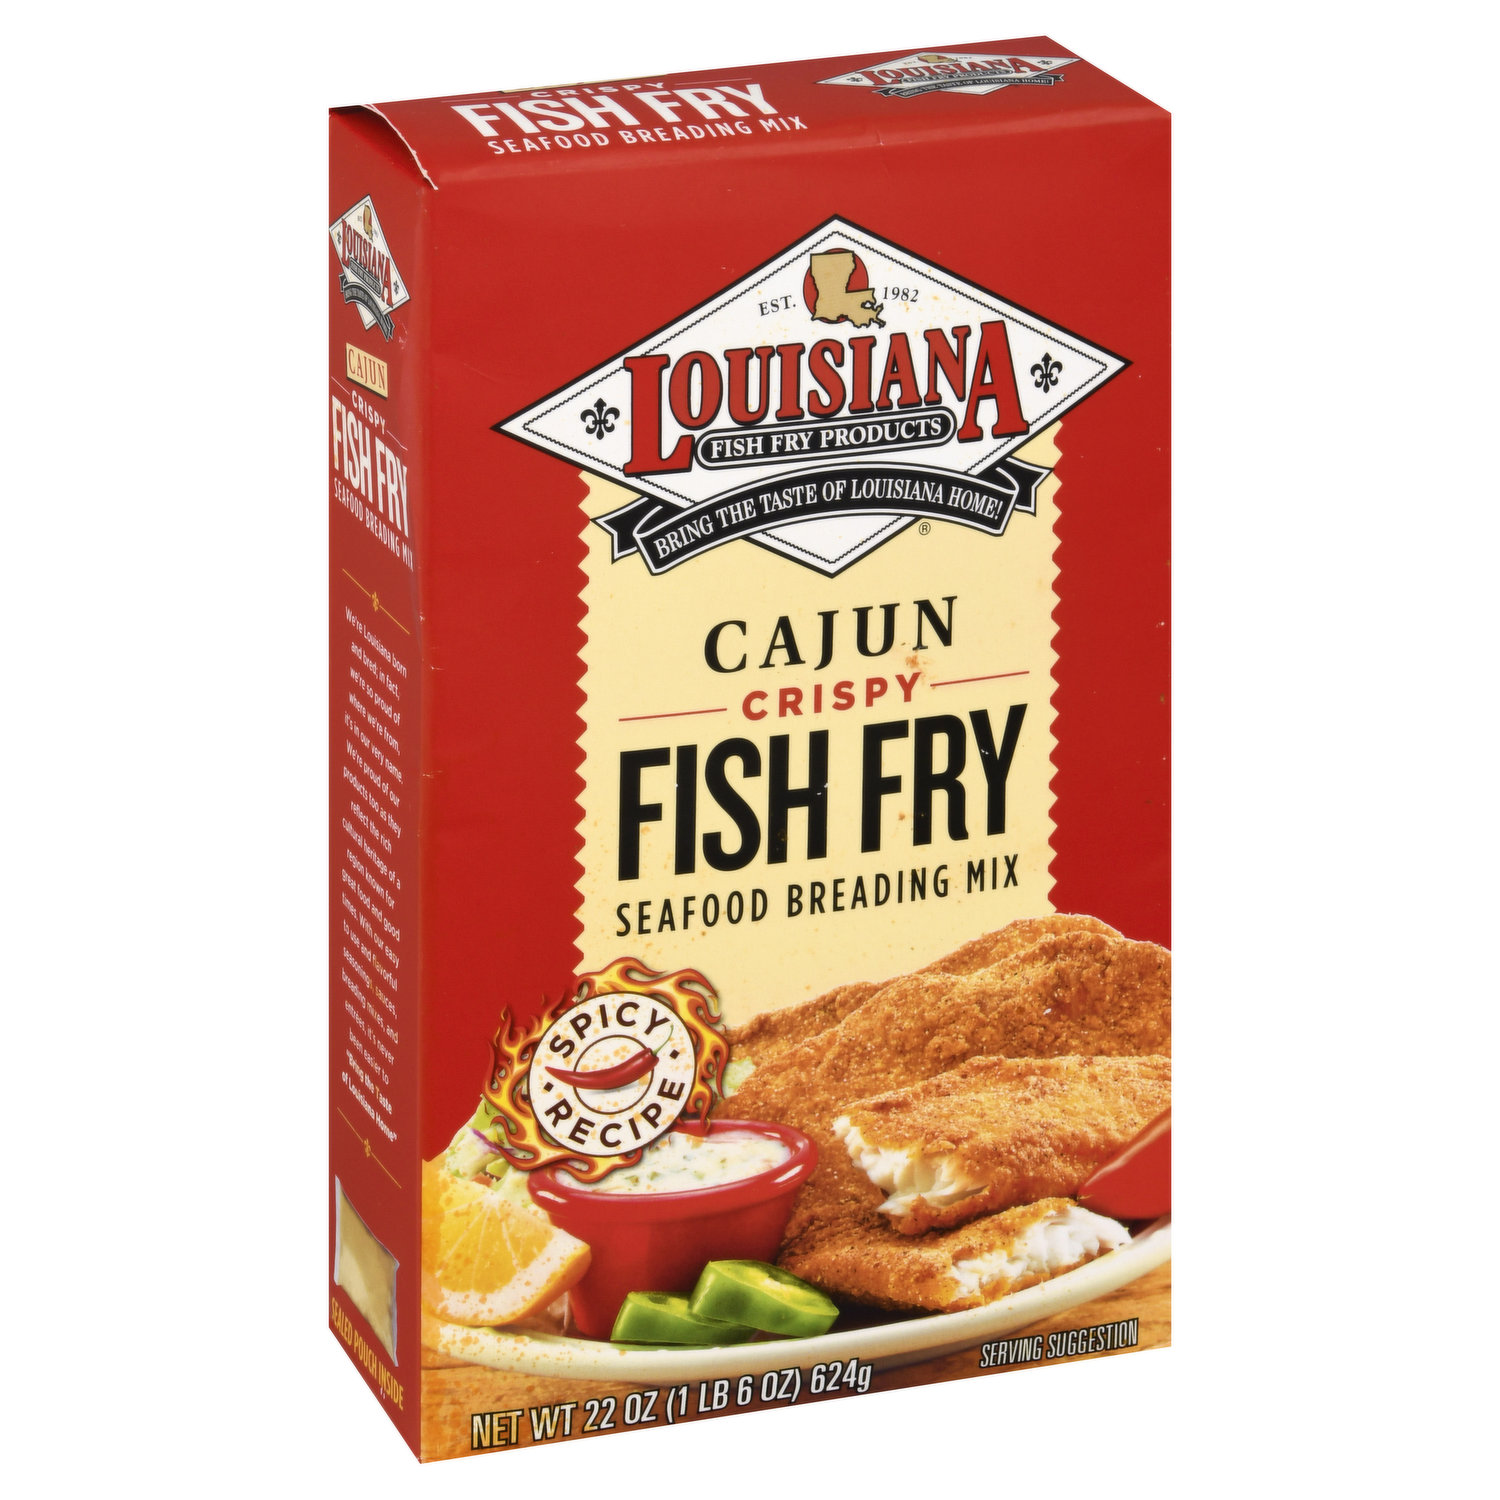 Louisiana Fish Fry Crunchy Bake Seasoned Coating Mix for Chicken